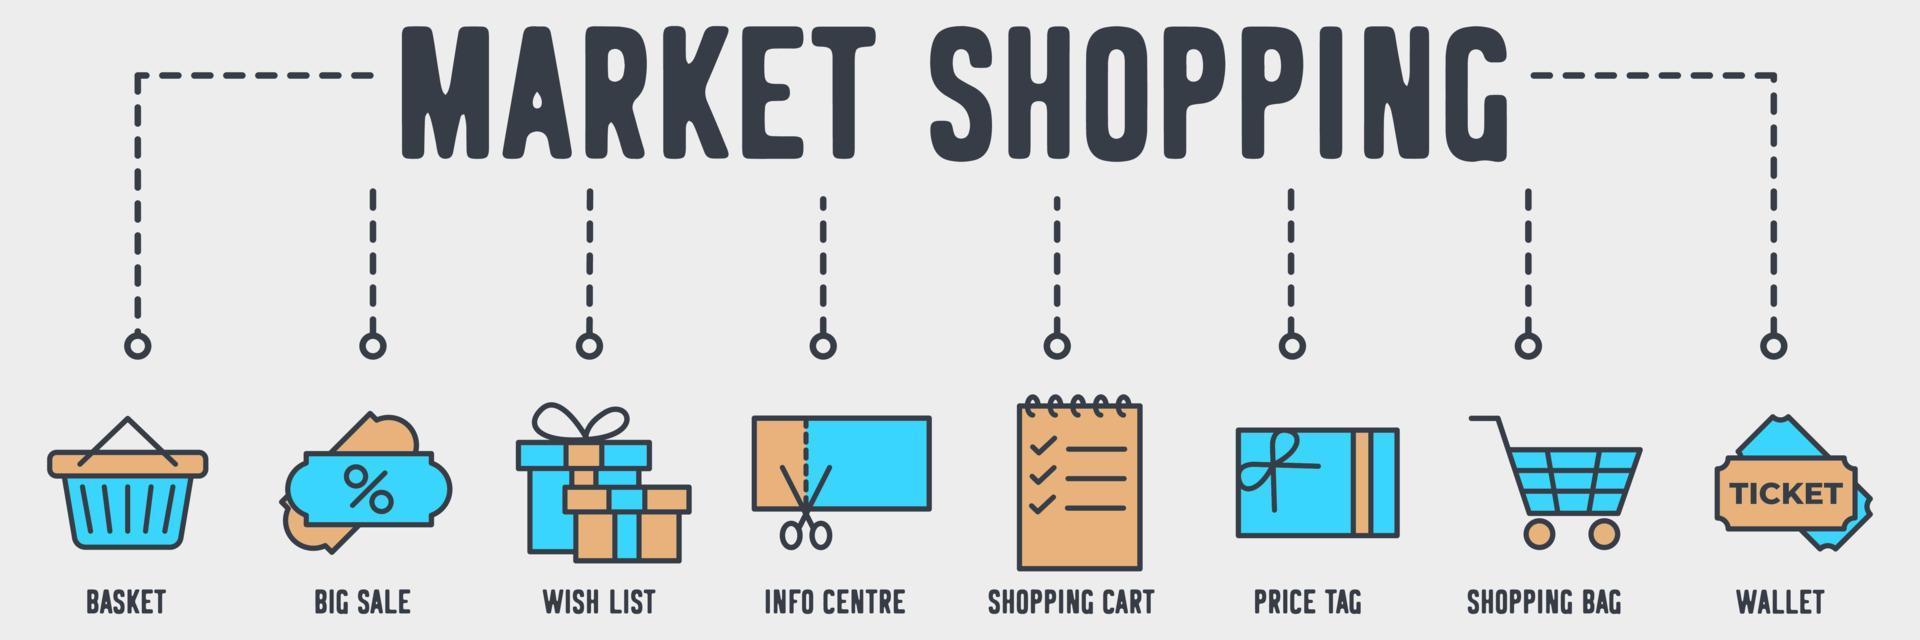 Markt-Einkaufszentrum-Banner-Web-Symbol. korb, großer verkauf, wunschliste, info, einkaufswagen, preisschild, einkaufen, taschenvektorillustrationskonzept. vektor